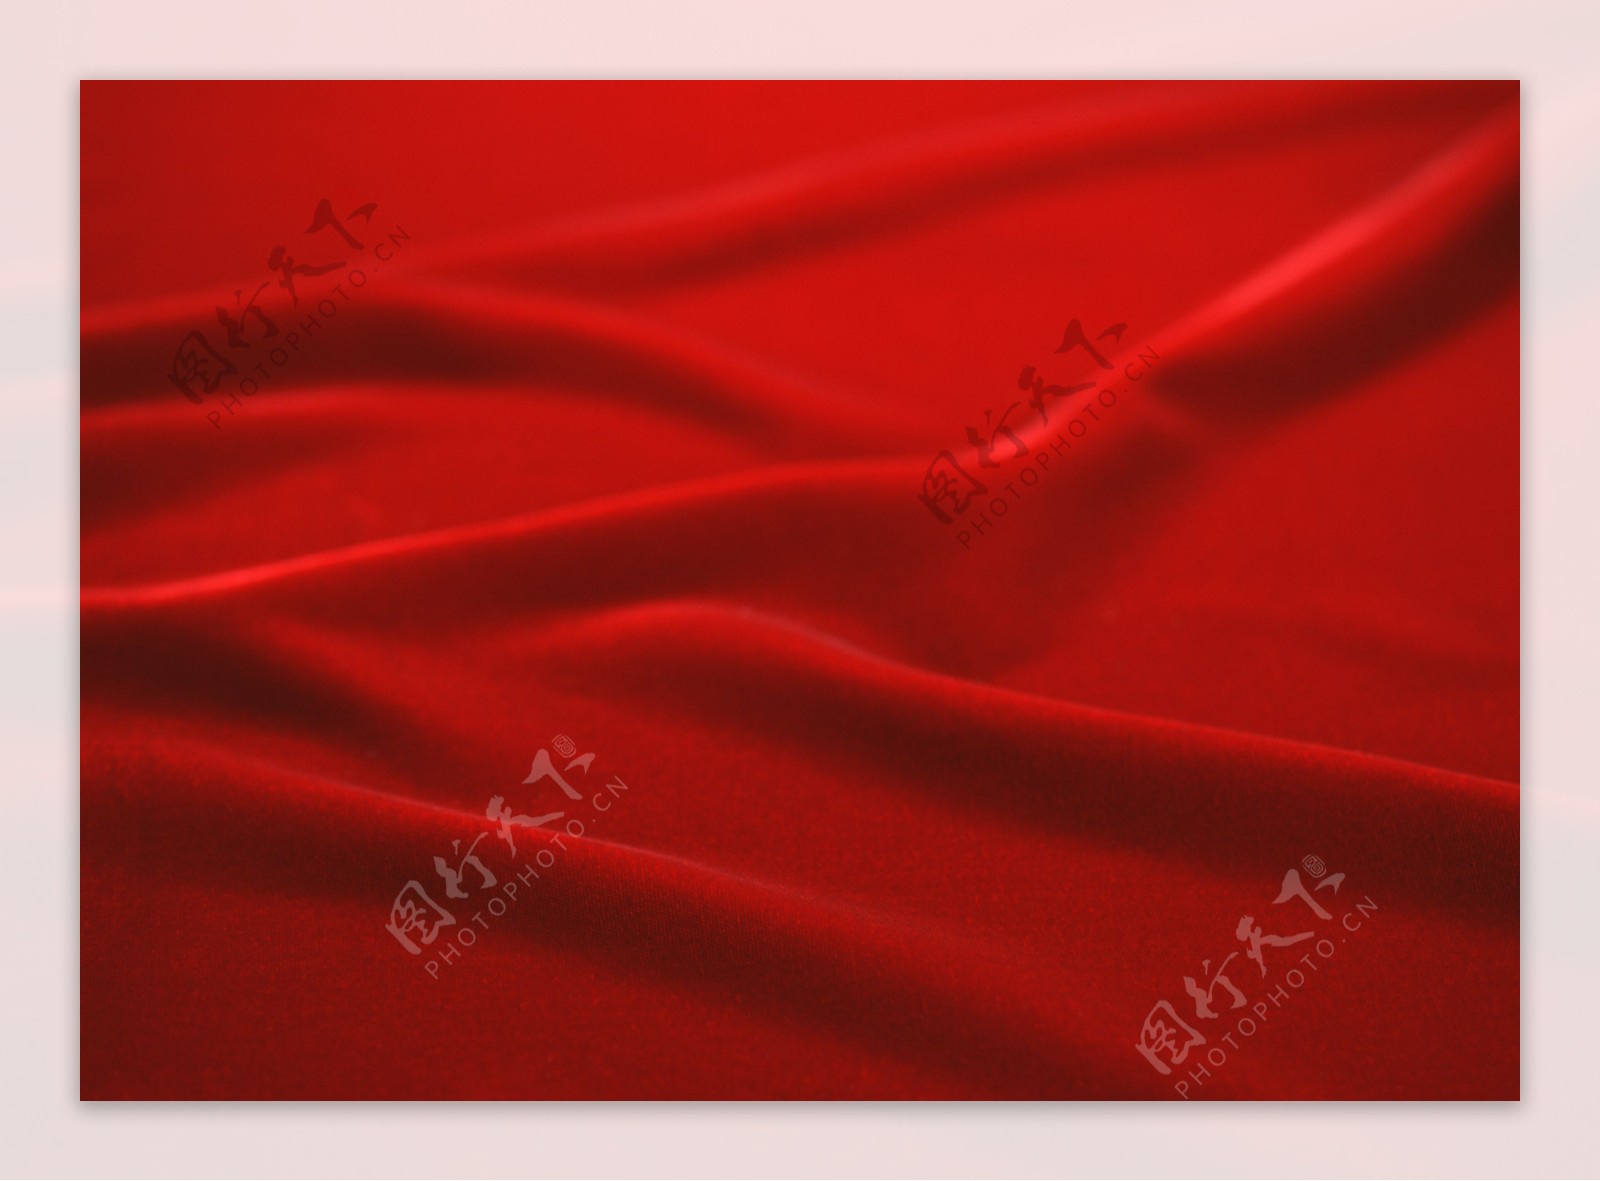 精美背景素材红色丝绸背景